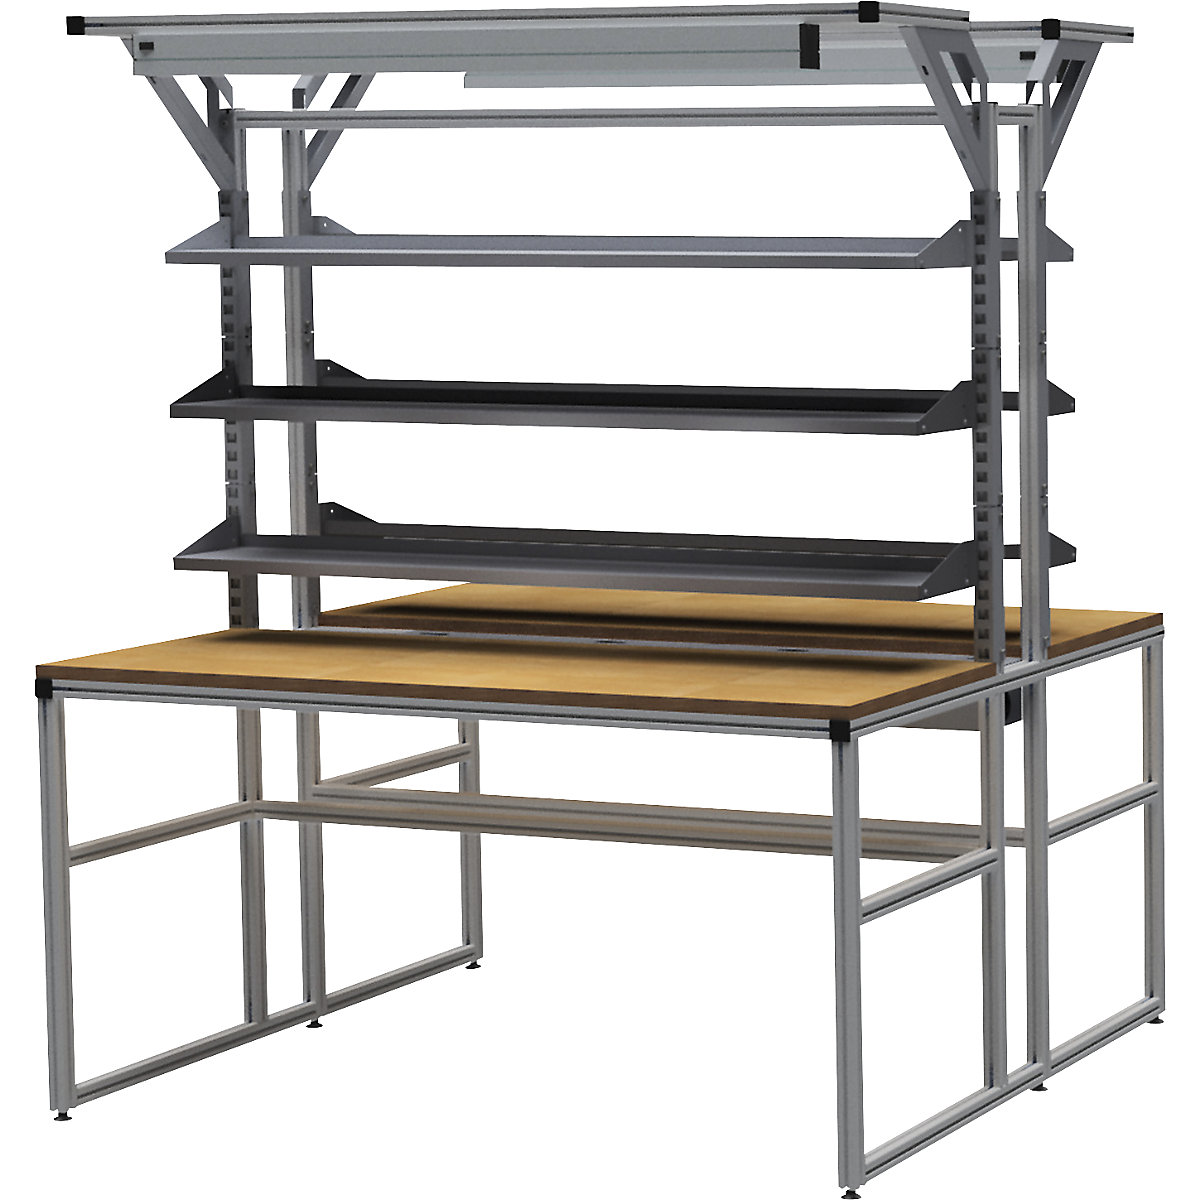 Hliníkový pracovní stůl workalu® se systémovou konstrukcí, oboustranný – bedrunka hirth